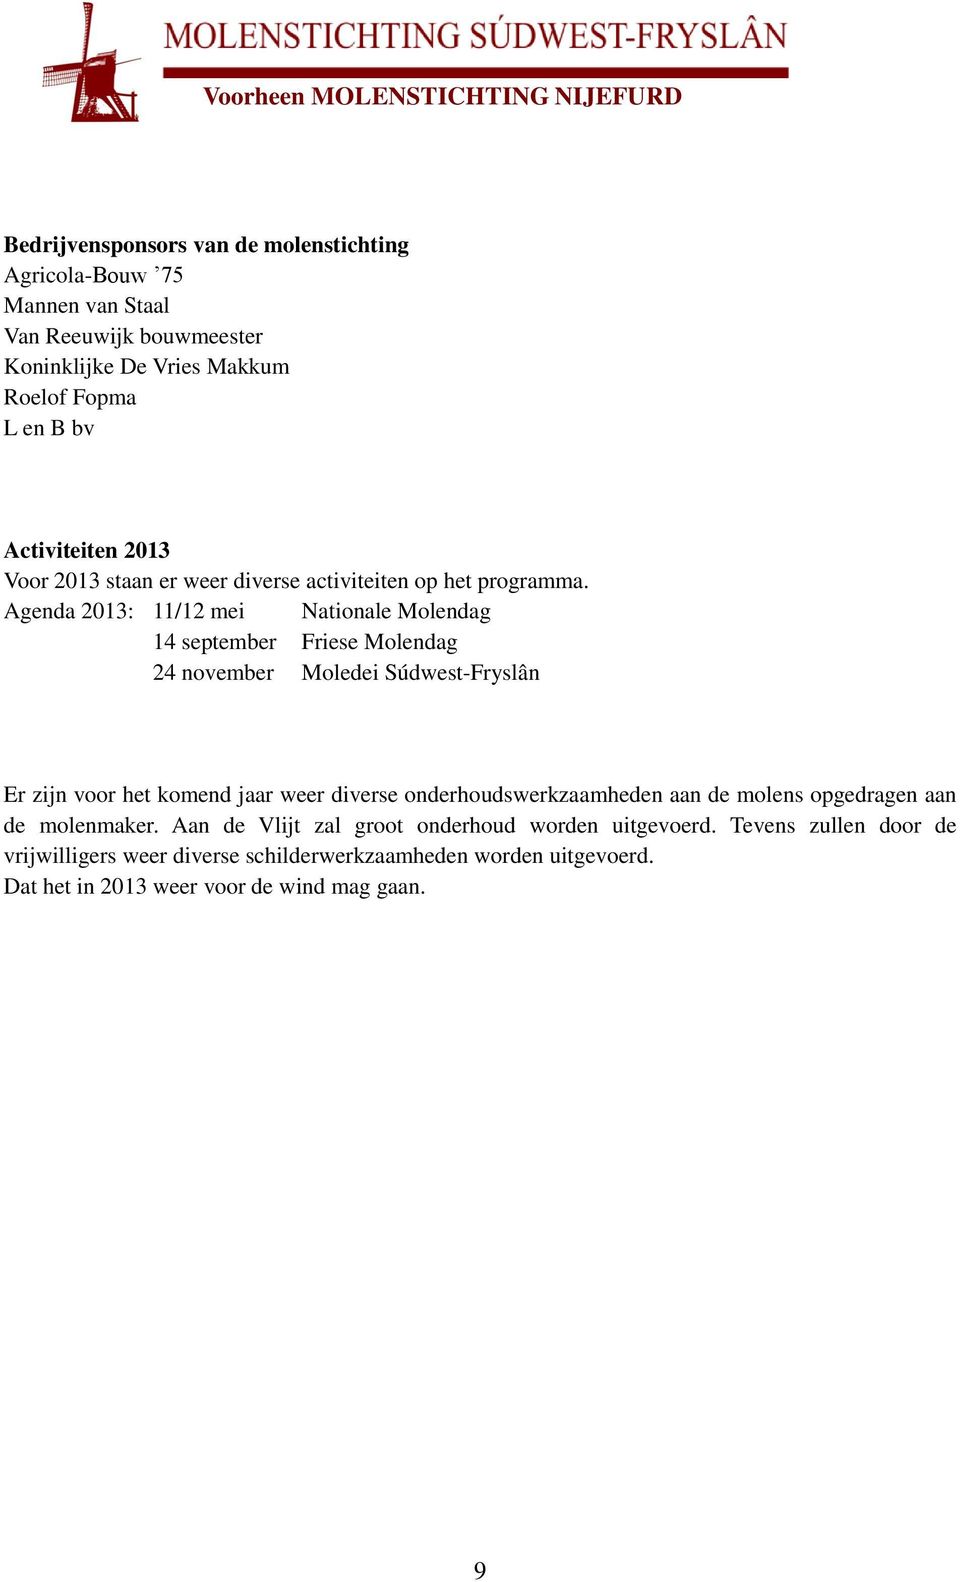 Agenda 2013: 11/12 mei Nationale Molendag 14 september Friese Molendag 24 november Moledei Súdwest-Fryslân Er zijn voor het komend jaar weer diverse